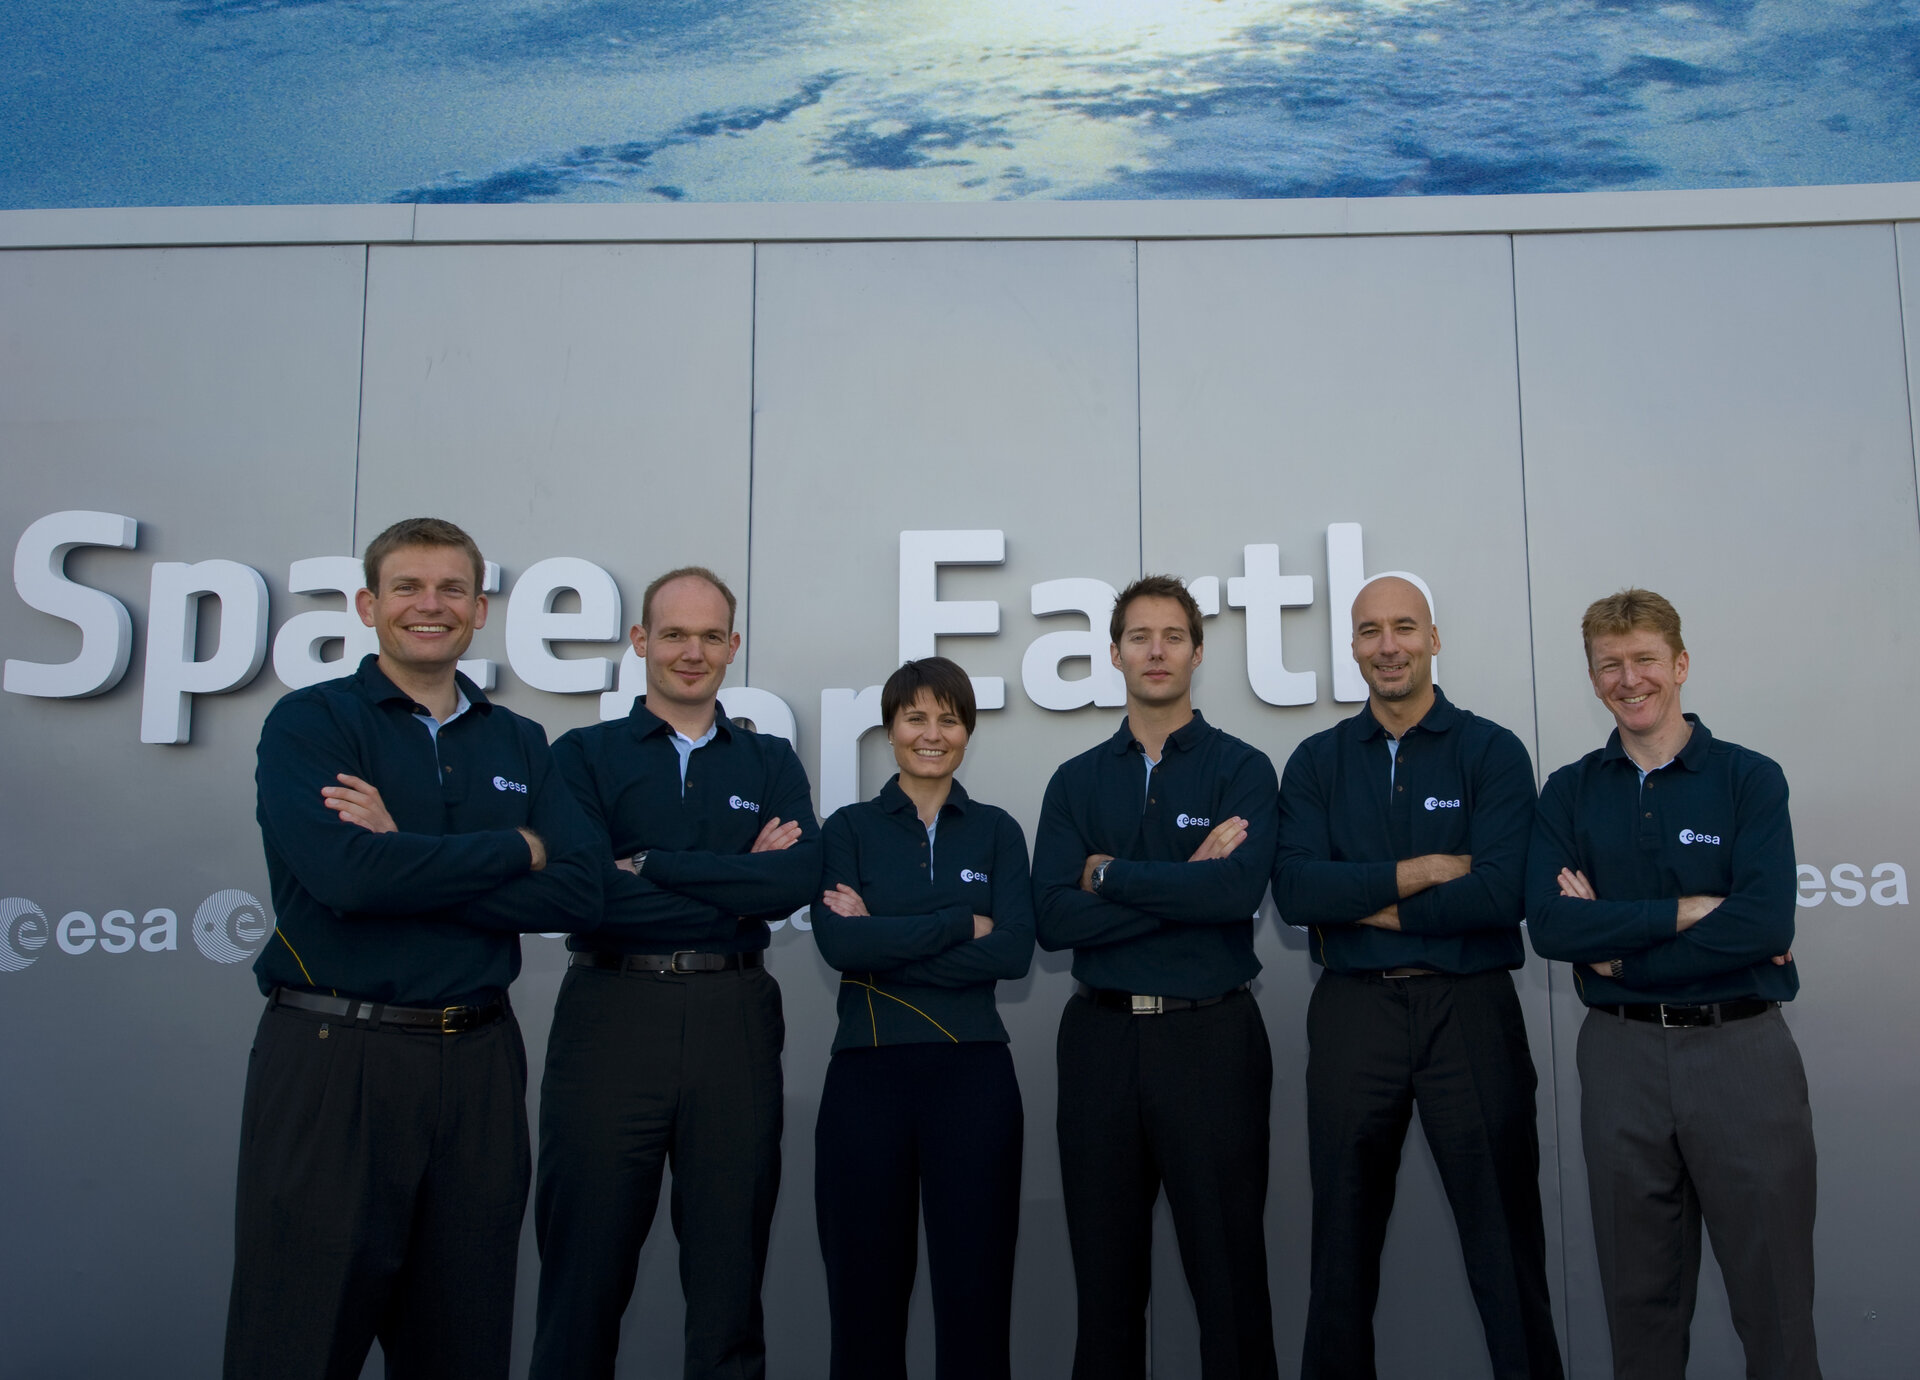 Les astronautes européens plaident pour que l'ESA obtienne son programme de vols habités